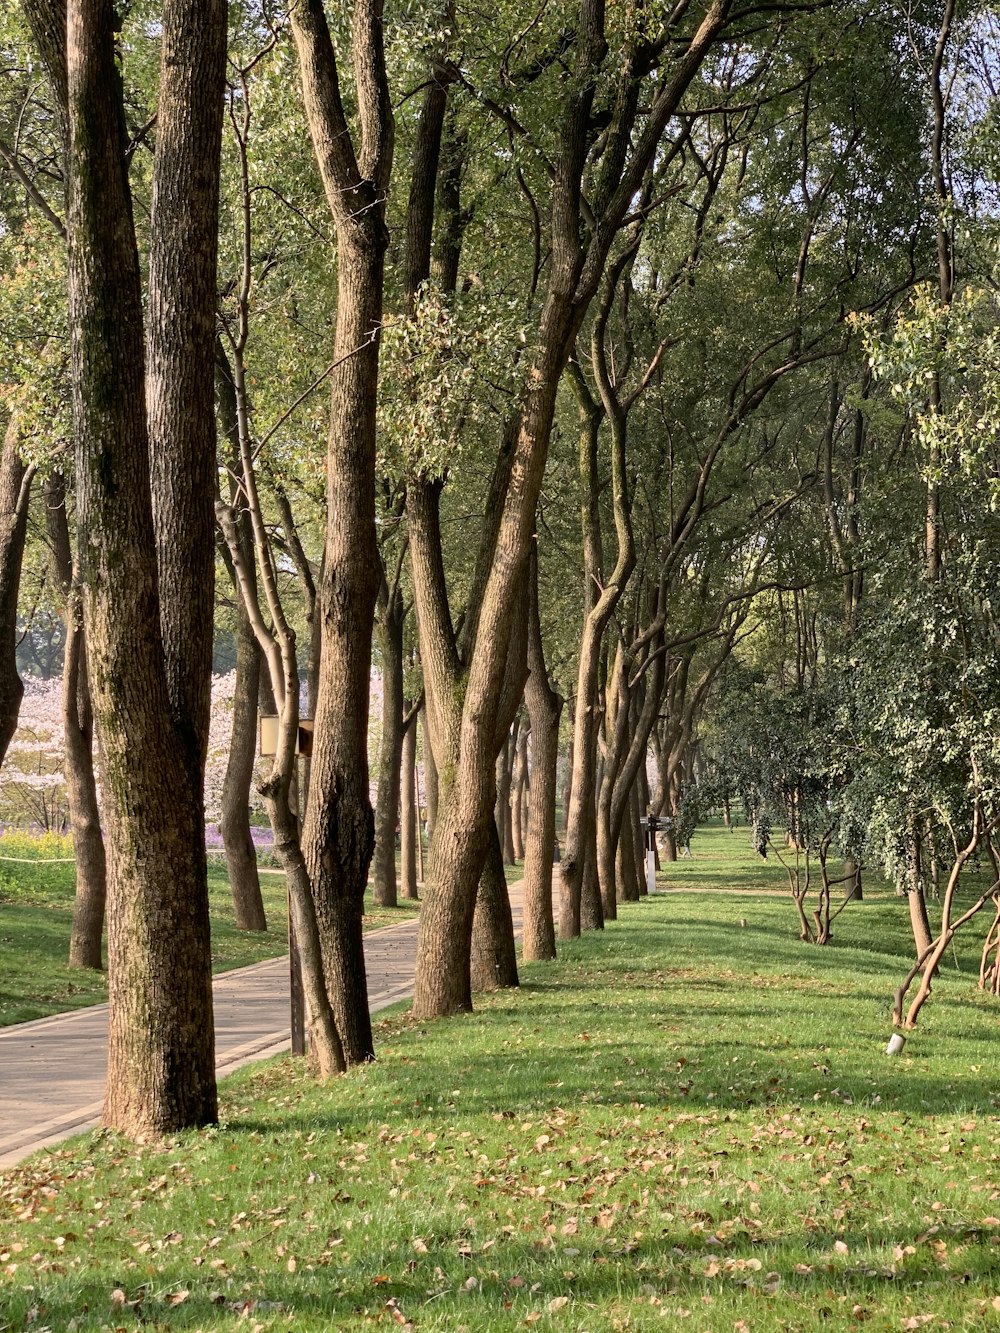 Una hilera de árboles bordea un camino en un parque